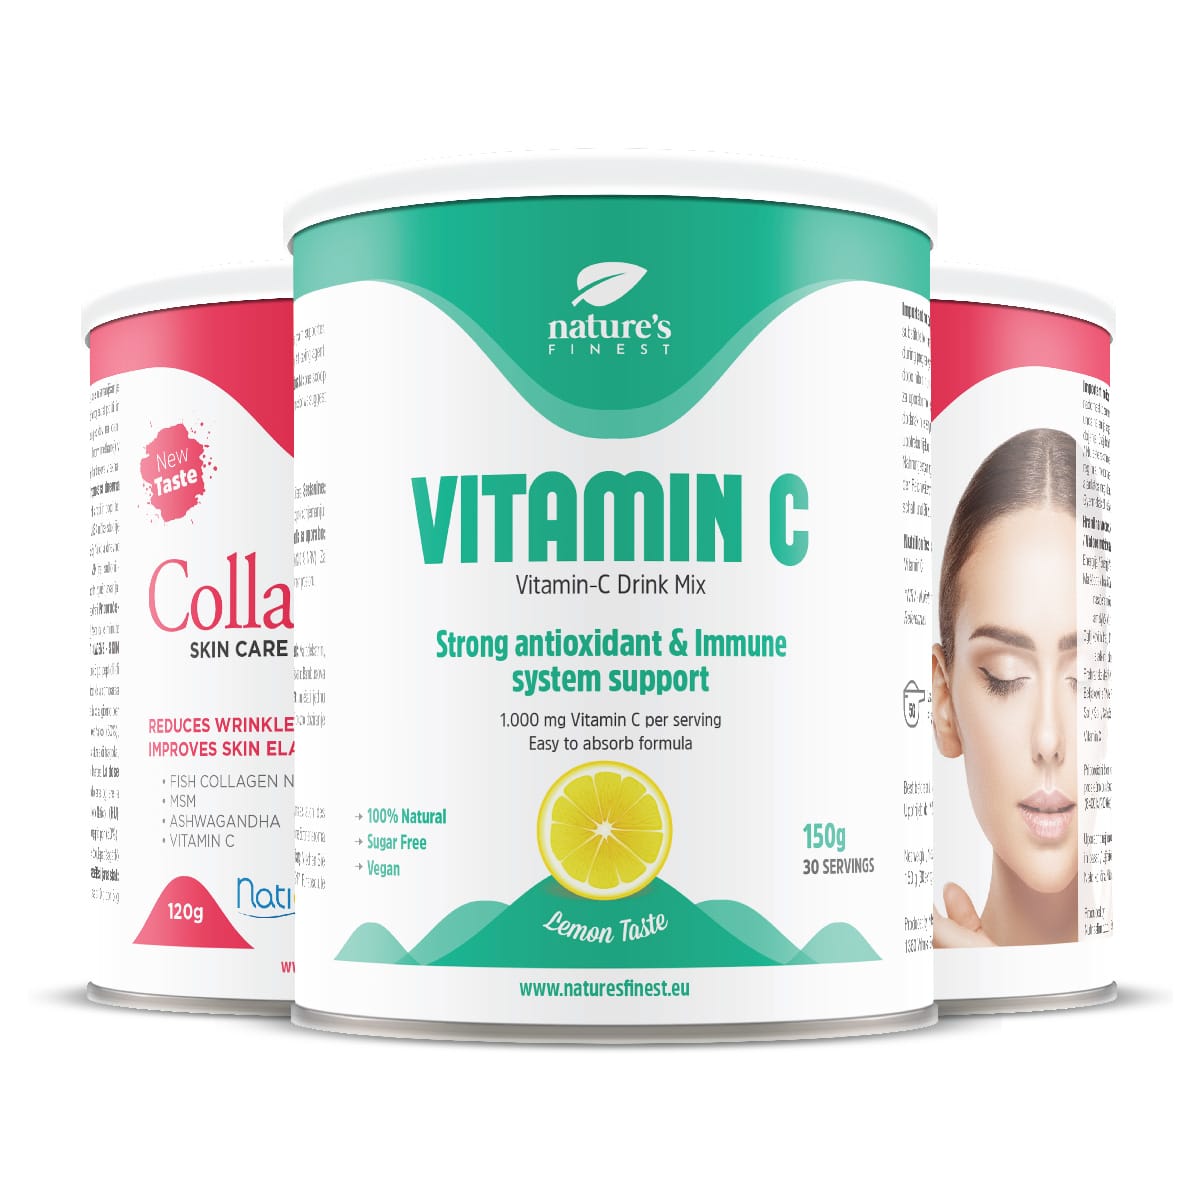 SkinCare Al Collagene 1+1 + Vitamina C , Integratore Di Collagene Marino , Polvere Di Peptidi , Riduce Le Rughe , Naturale , Collagene , 240g